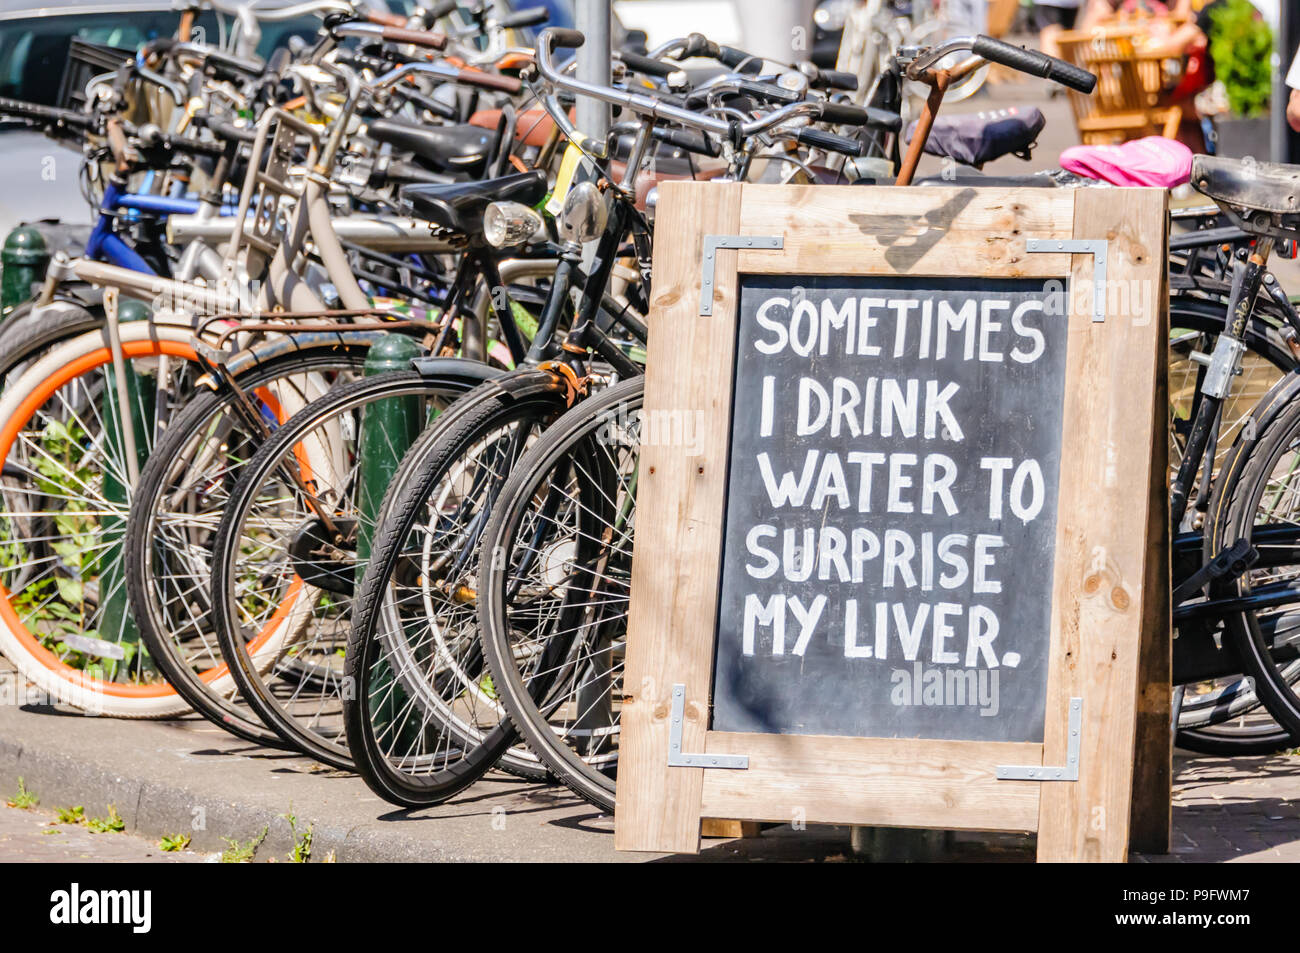 Firmar junto a algunas bicicletas aparcadas diciendo "a veces puedo beber agua para sorprender a mi hígado', Foto de stock